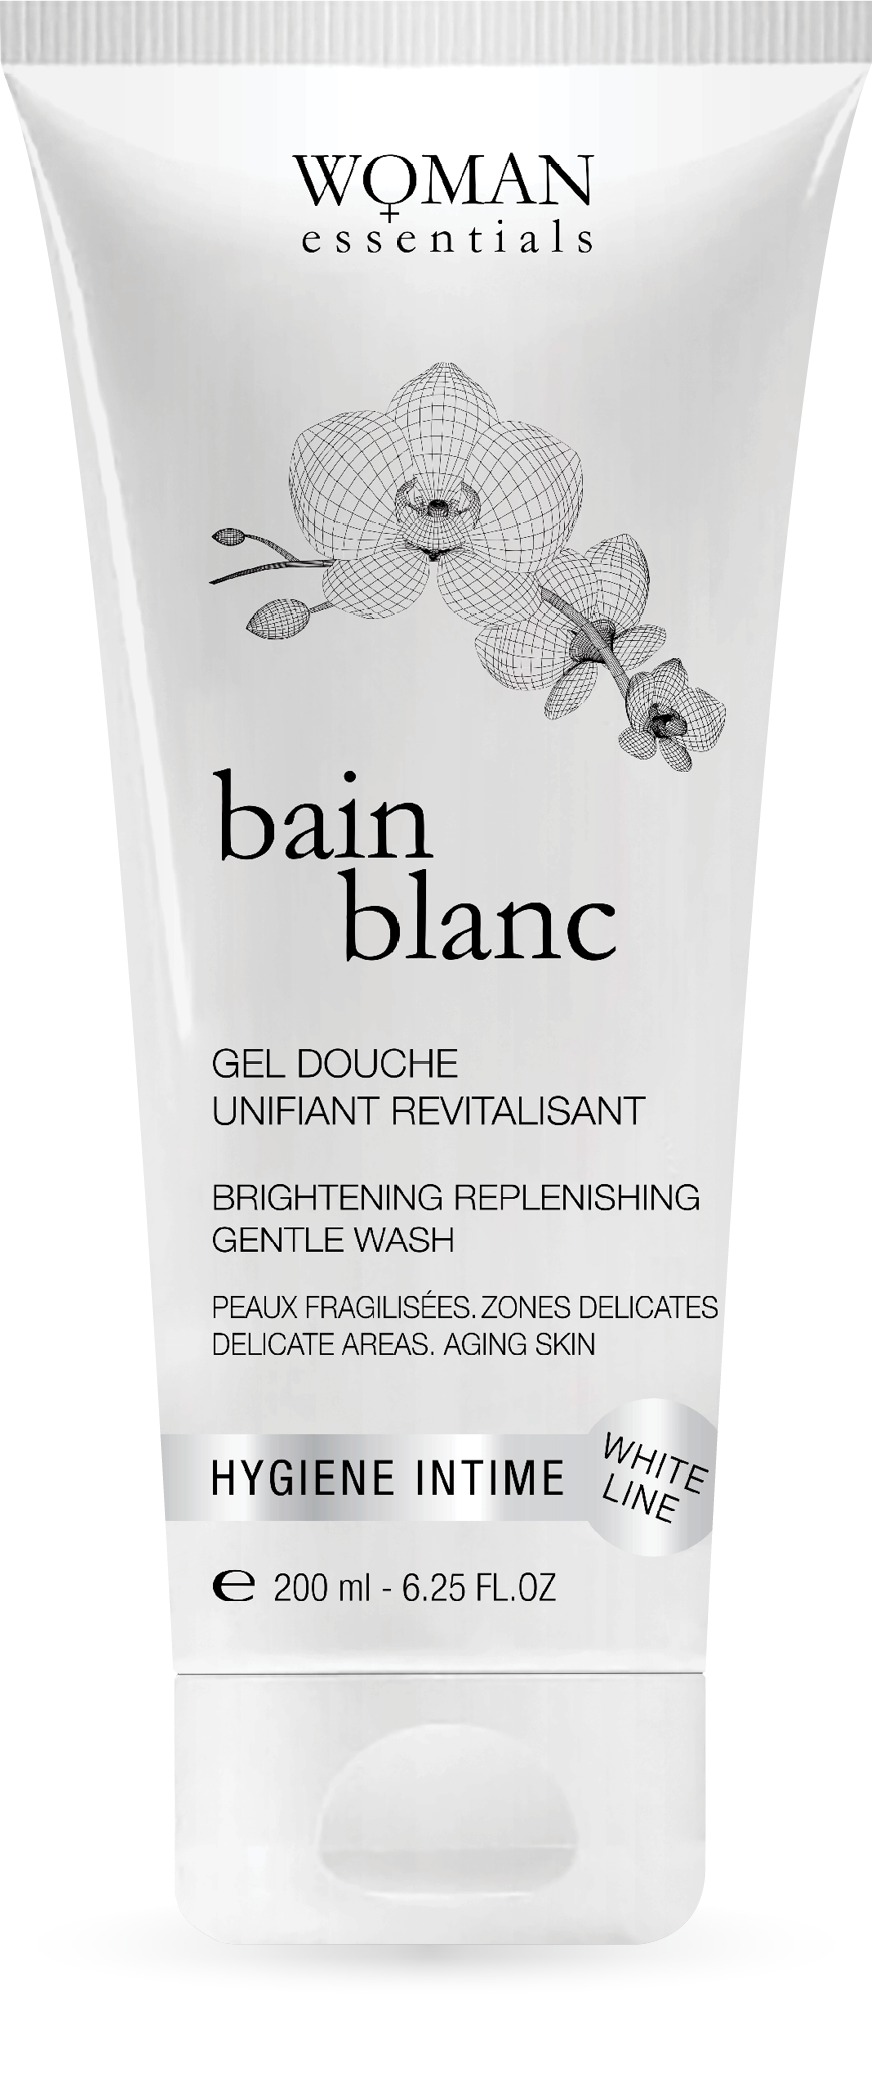 woman essential bain blanc intimate hygiene feminine gentle vag wash intimate gel probiotic cleanser